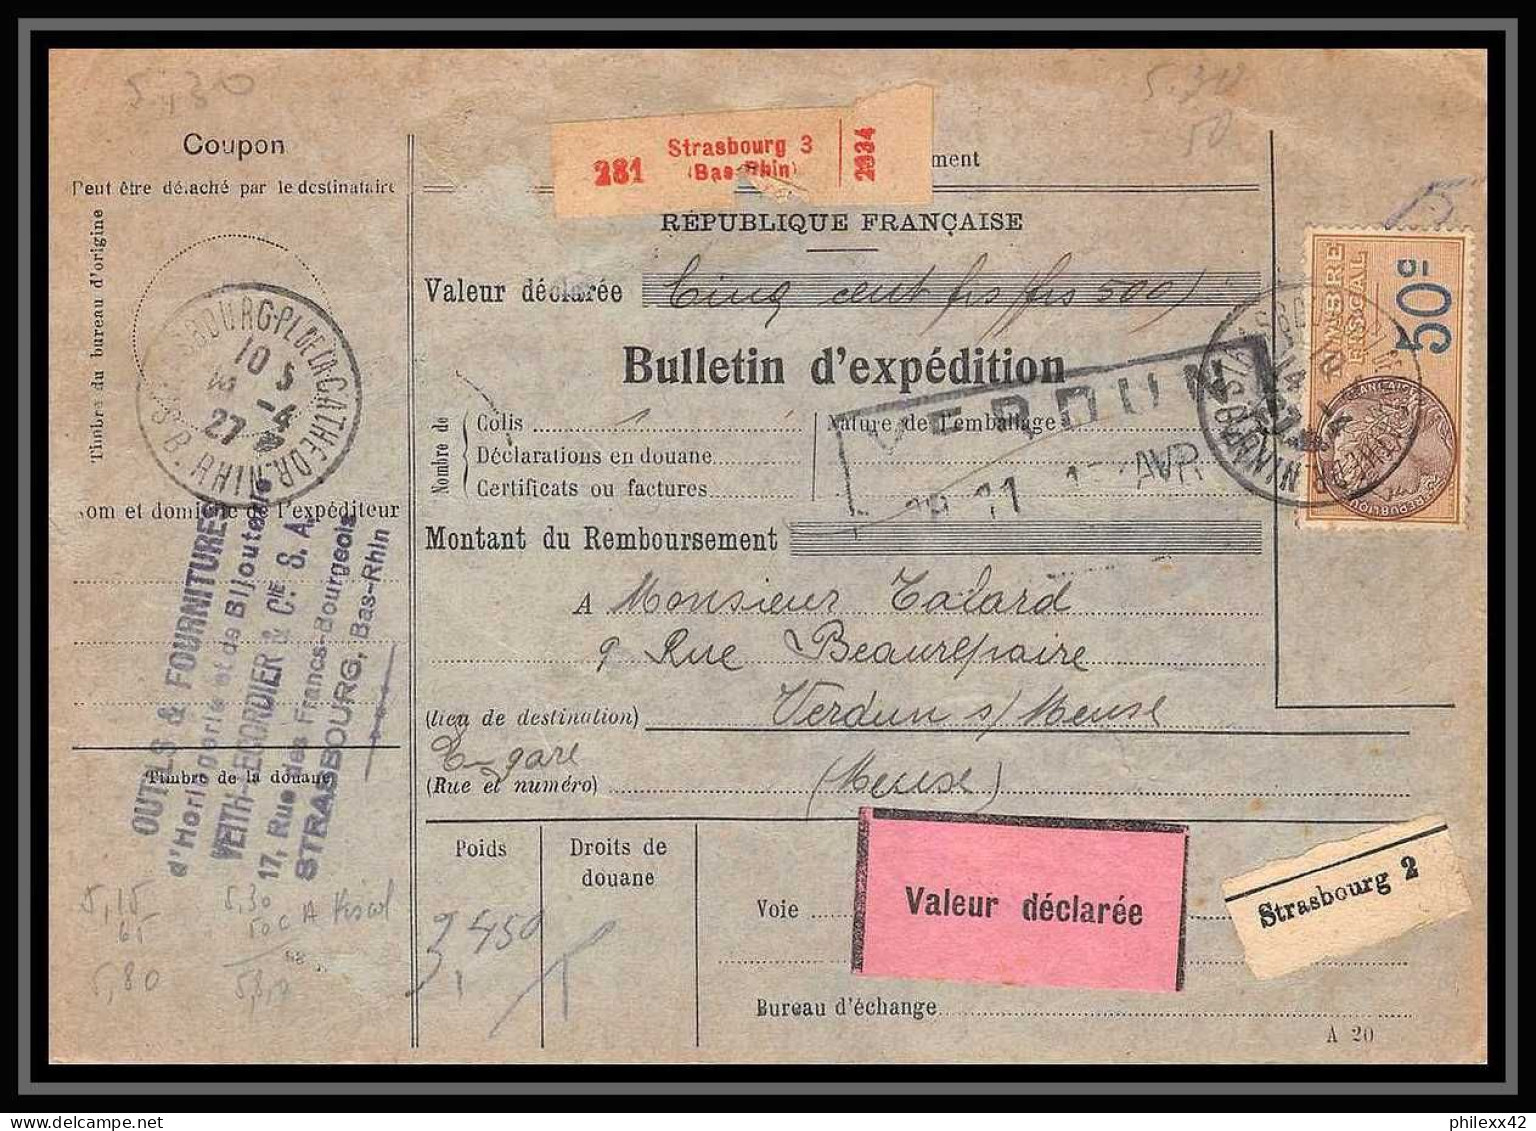 25238/ Bulletin D'expédition France Colis Postaux Fiscal 1927 Strasbourg 3 Pour Verdun Meuse Valeur Déclaré Merson N°145 - Brieven & Documenten